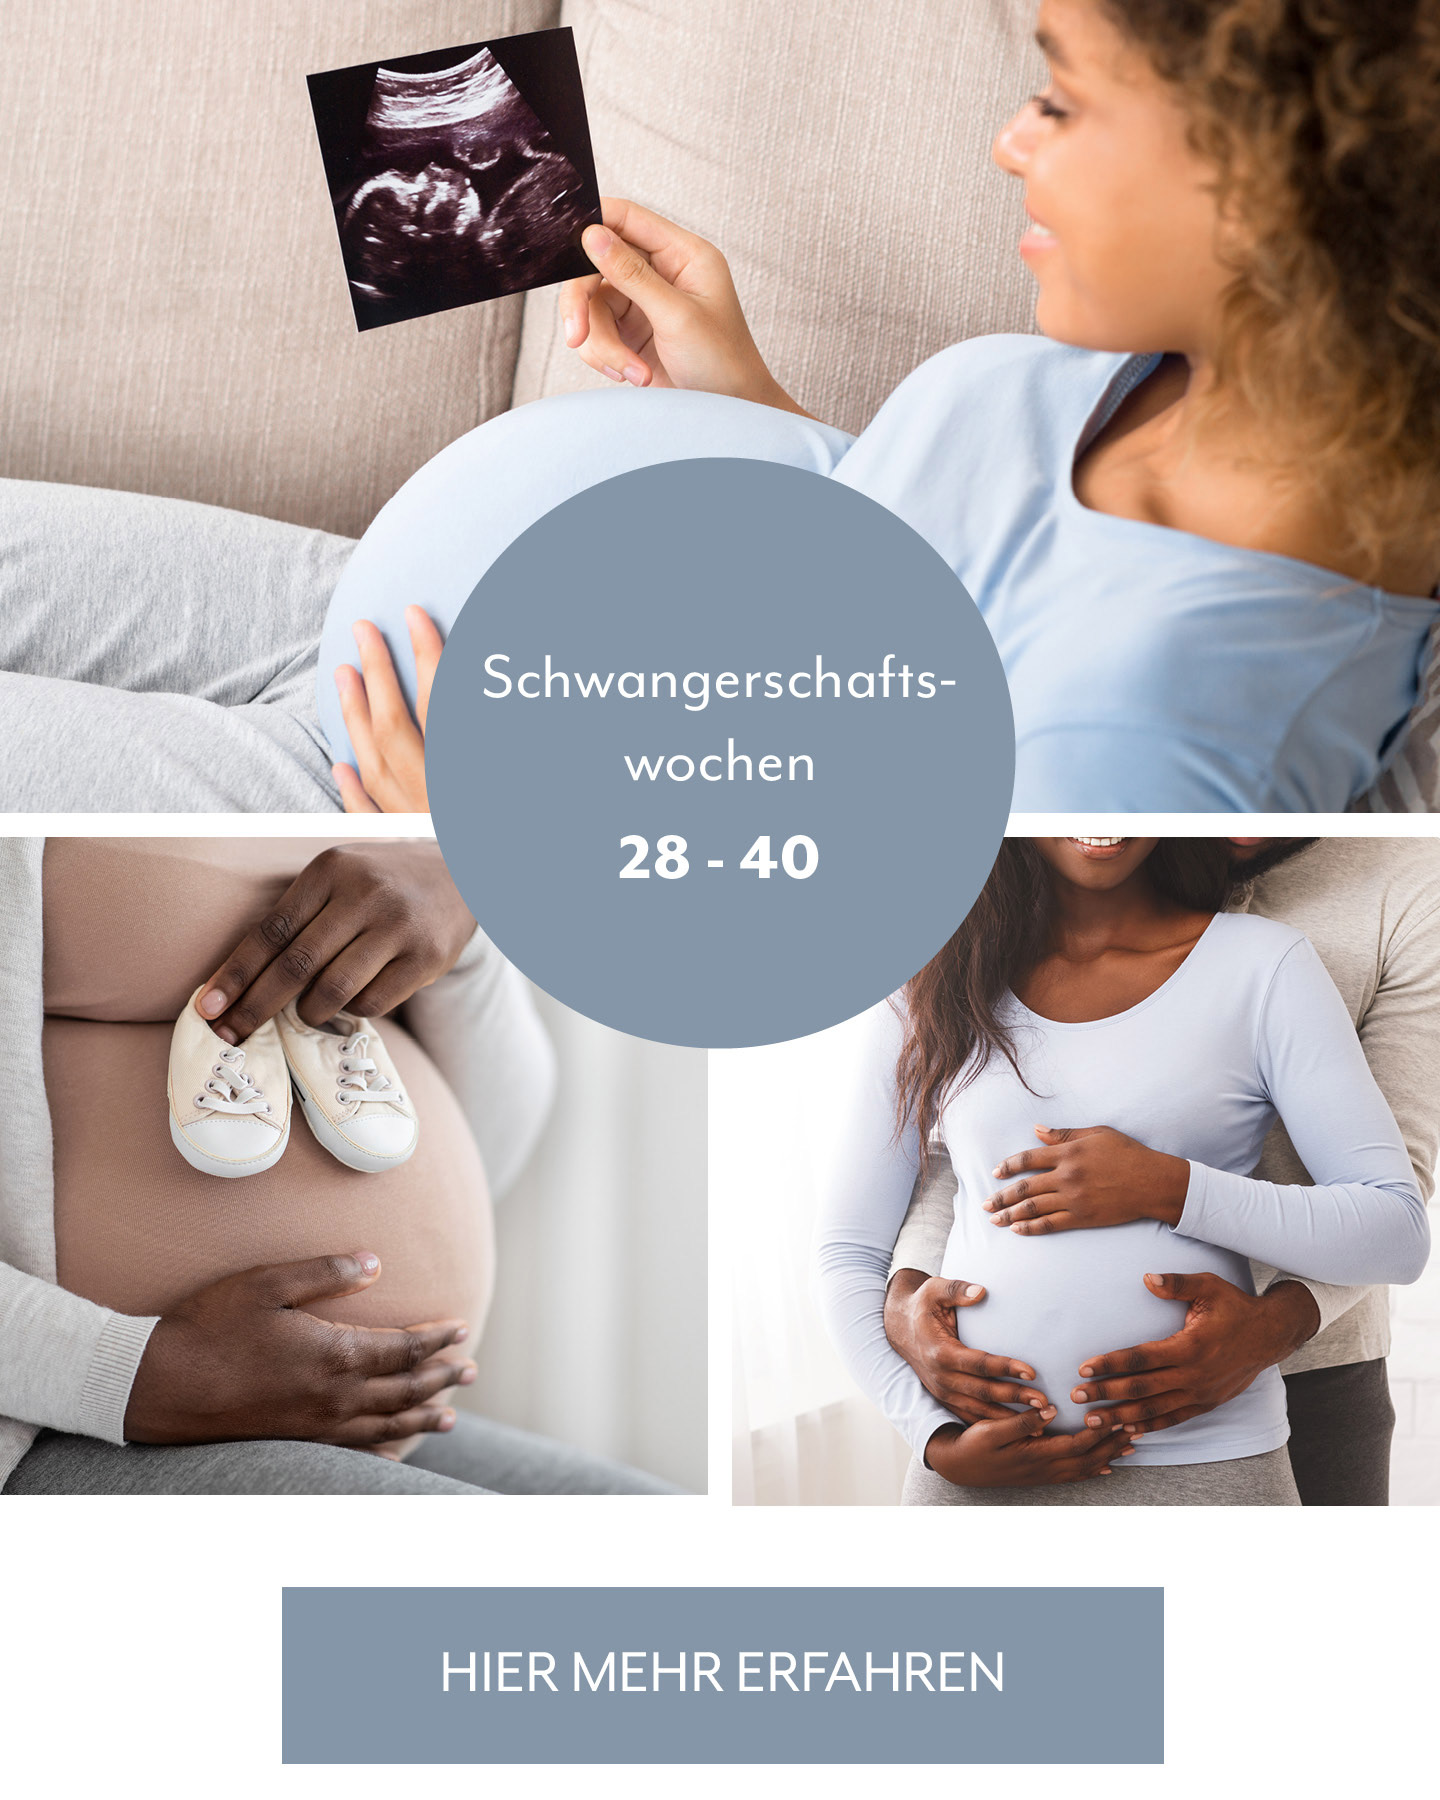 Schwangerschaftswochen 3 Trimester Übersicht: Paar streichelt runden Babybauch.